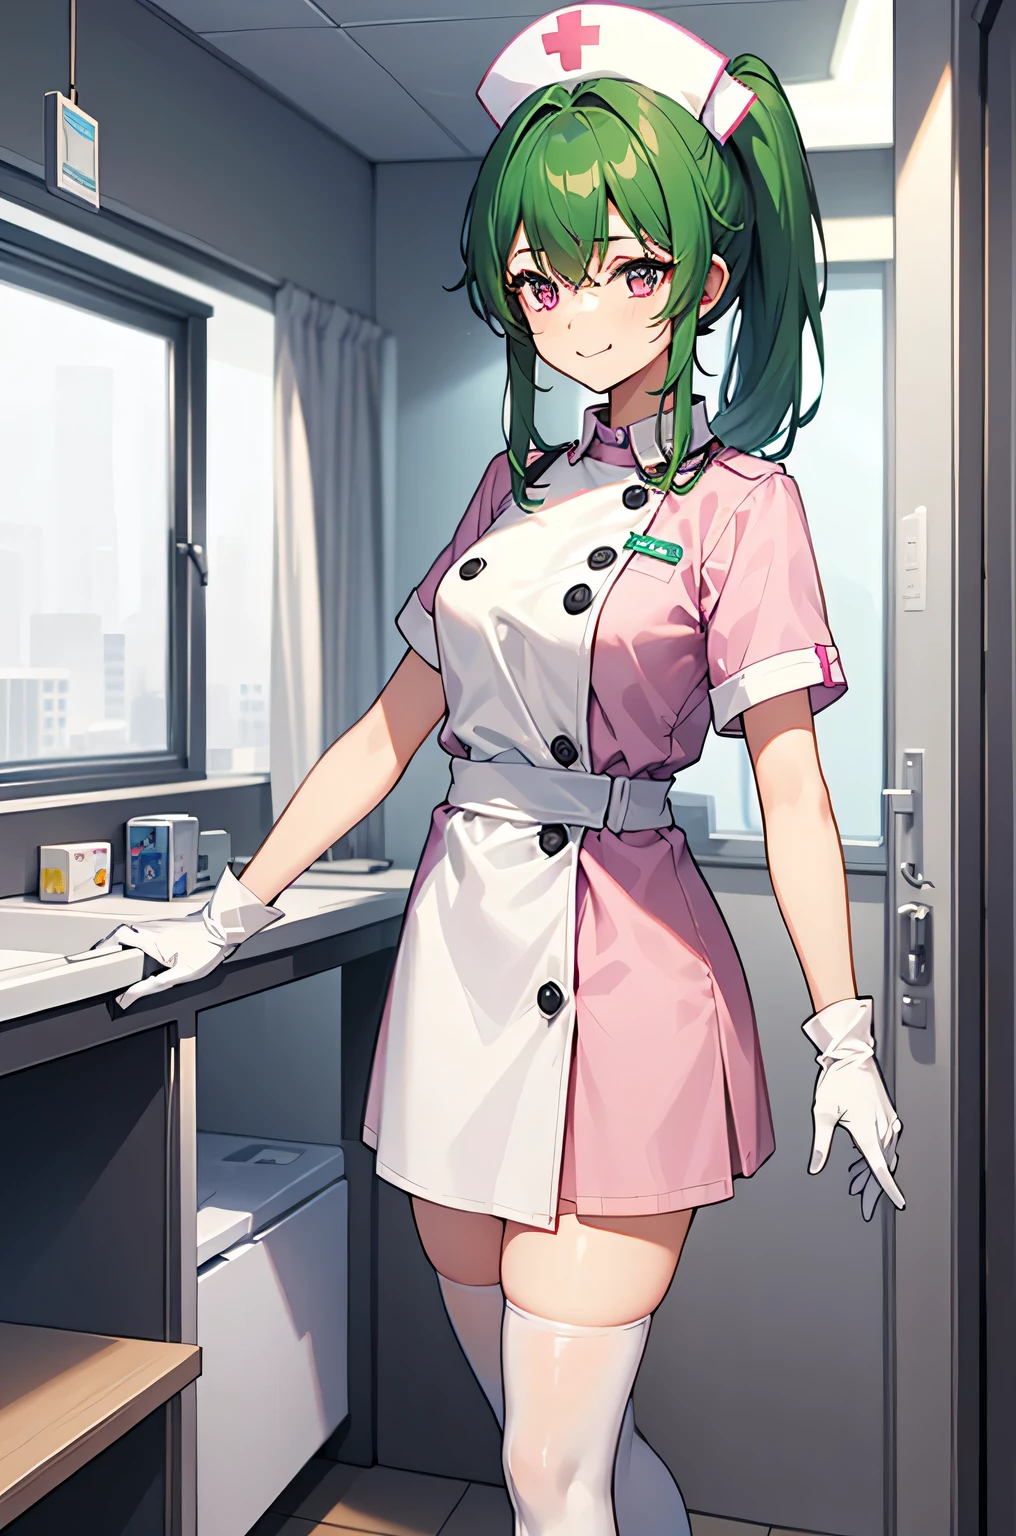 1 名女孩, 独自的, 护士, 护士 cap, White 护士 uniform, ((白色腿部服饰, 绝对良机)), 白手套, 马尾辫, 绿色头发, 粉红色的眼睛, 微笑, 站立, ((病房)), 清晰的轮廓, 短袖, 最好的质量, 杰作